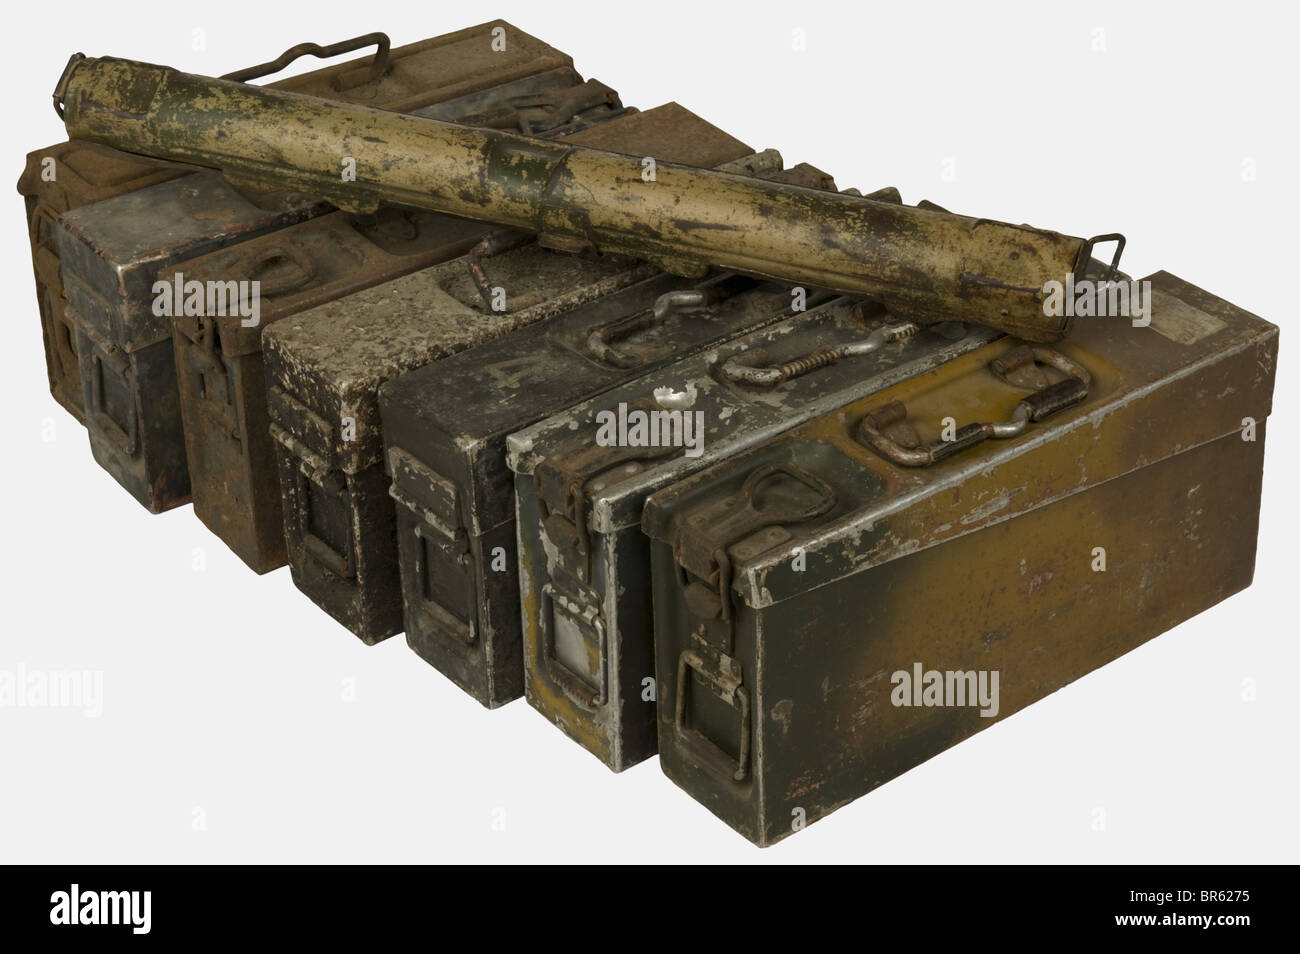 Un gruppo di attrezzature dell'esercito tedesco, comprendente una cassa a botte singola MG34 con mimetizzazione di bel colore dell'albero (cinghia in tela mancante), una cassa a botte doppia MG34 con resti di mimetizzazione a due tonalità contenente due riviste MG 34/42 da 75 colpi (una con un bel mimetismo a due tonalità), Sette custodie a cartuccia per MG 34/42 di alluminio o acciaio con manici in pelle, una delle custodie camoufled in alluminio ha un danno schegge sulla copertina. Storico, storico, 1930s, 1930s, 20th secolo, accessori, accessori, accessori, accessori, utilities, utilities, oggetti, oggetti, alambicchi, clippi, Foto Stock